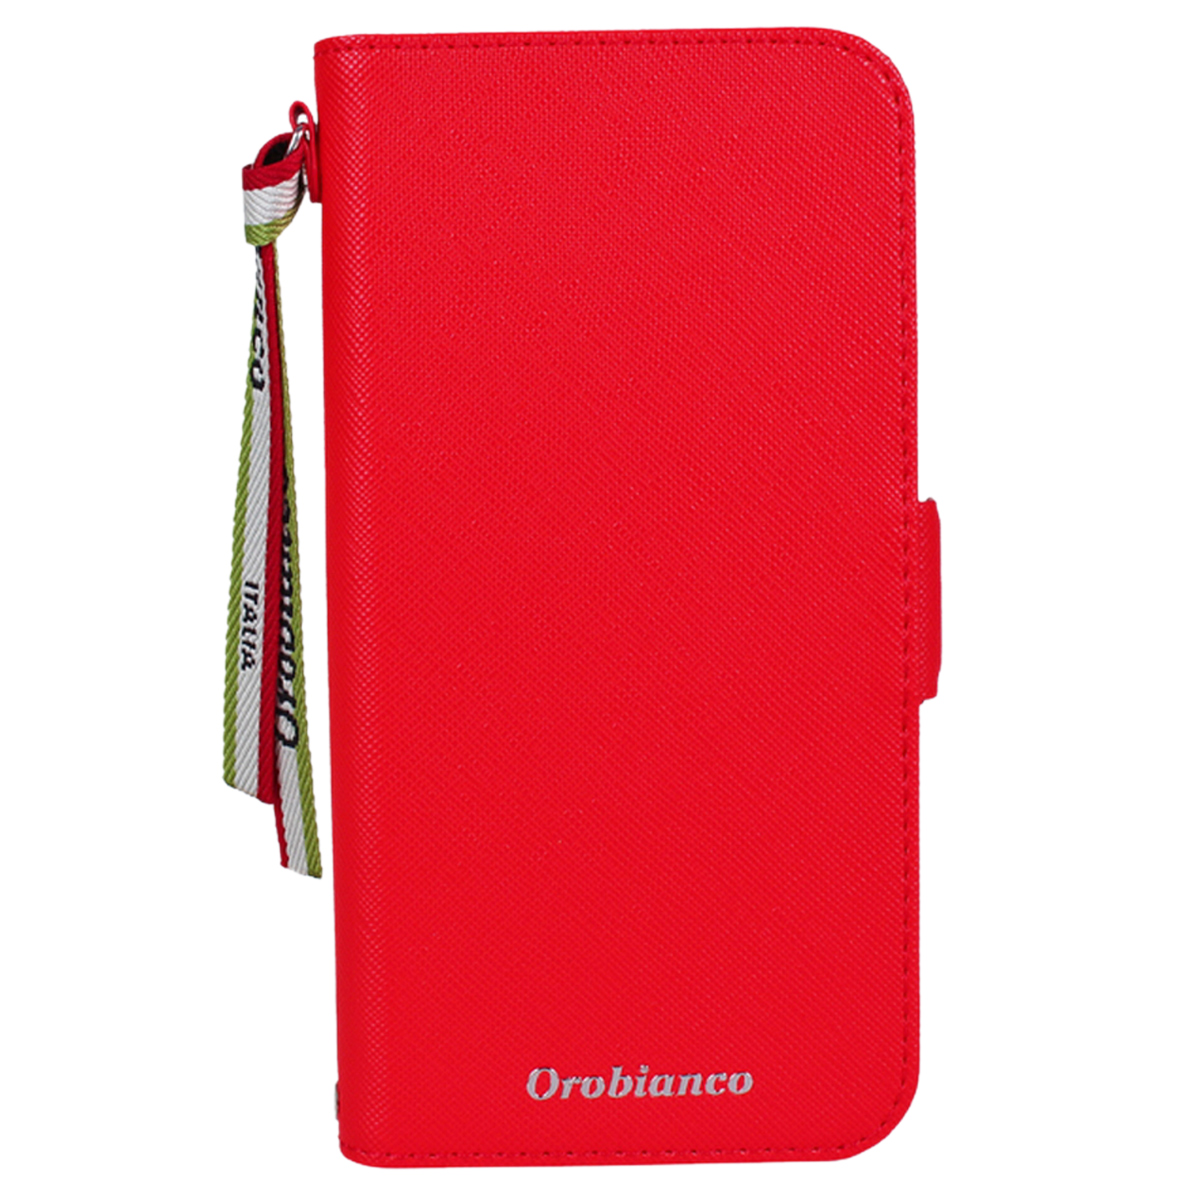 Orobianco オロビアンコ iPhone 12 mini 12 12 Pro ケース スマホ 携帯